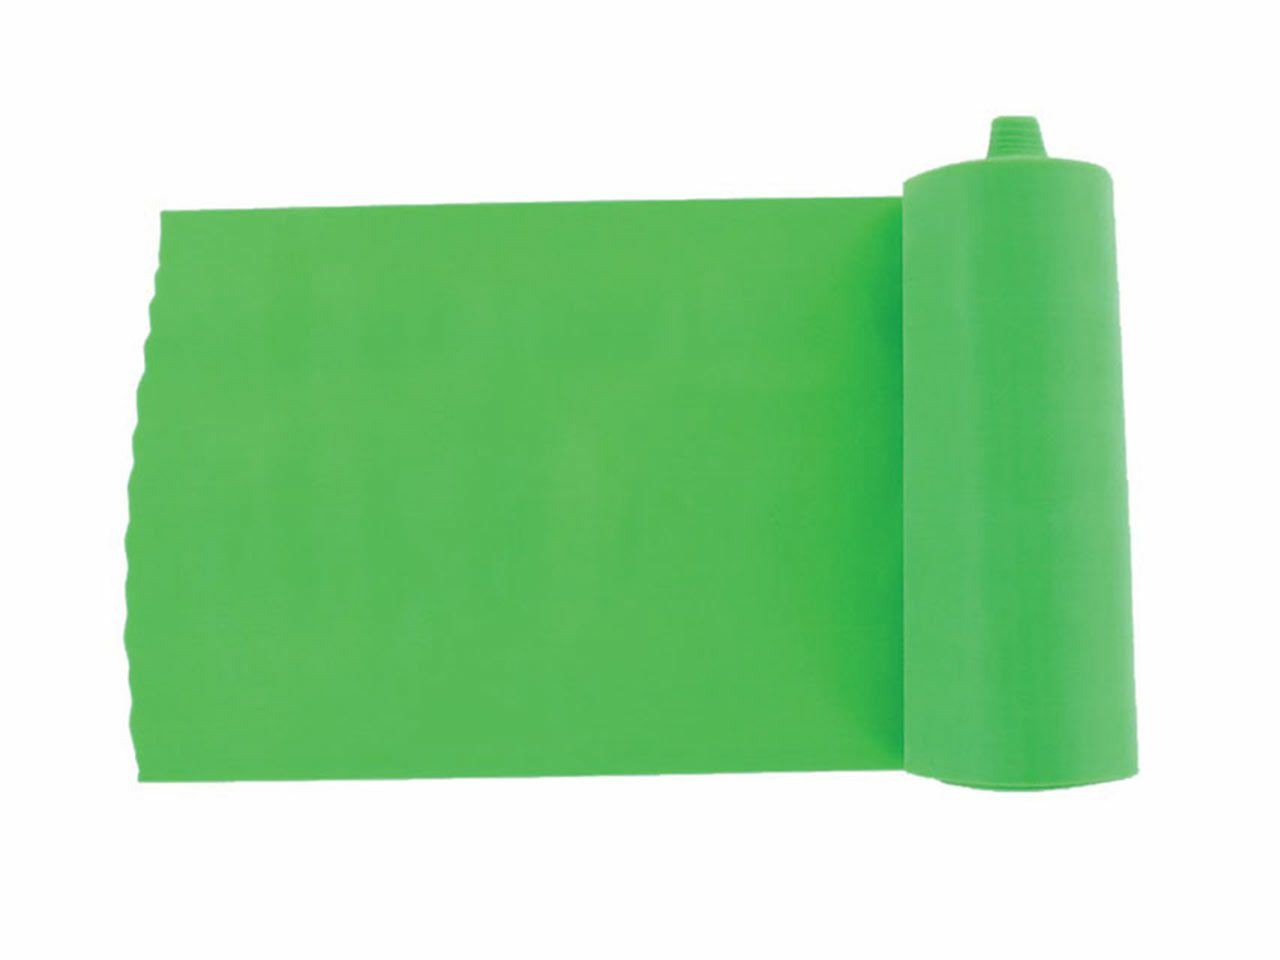 TRAKA ZA VJEŽBANJE 0.25, 5.5 m x 14 cm, zelena